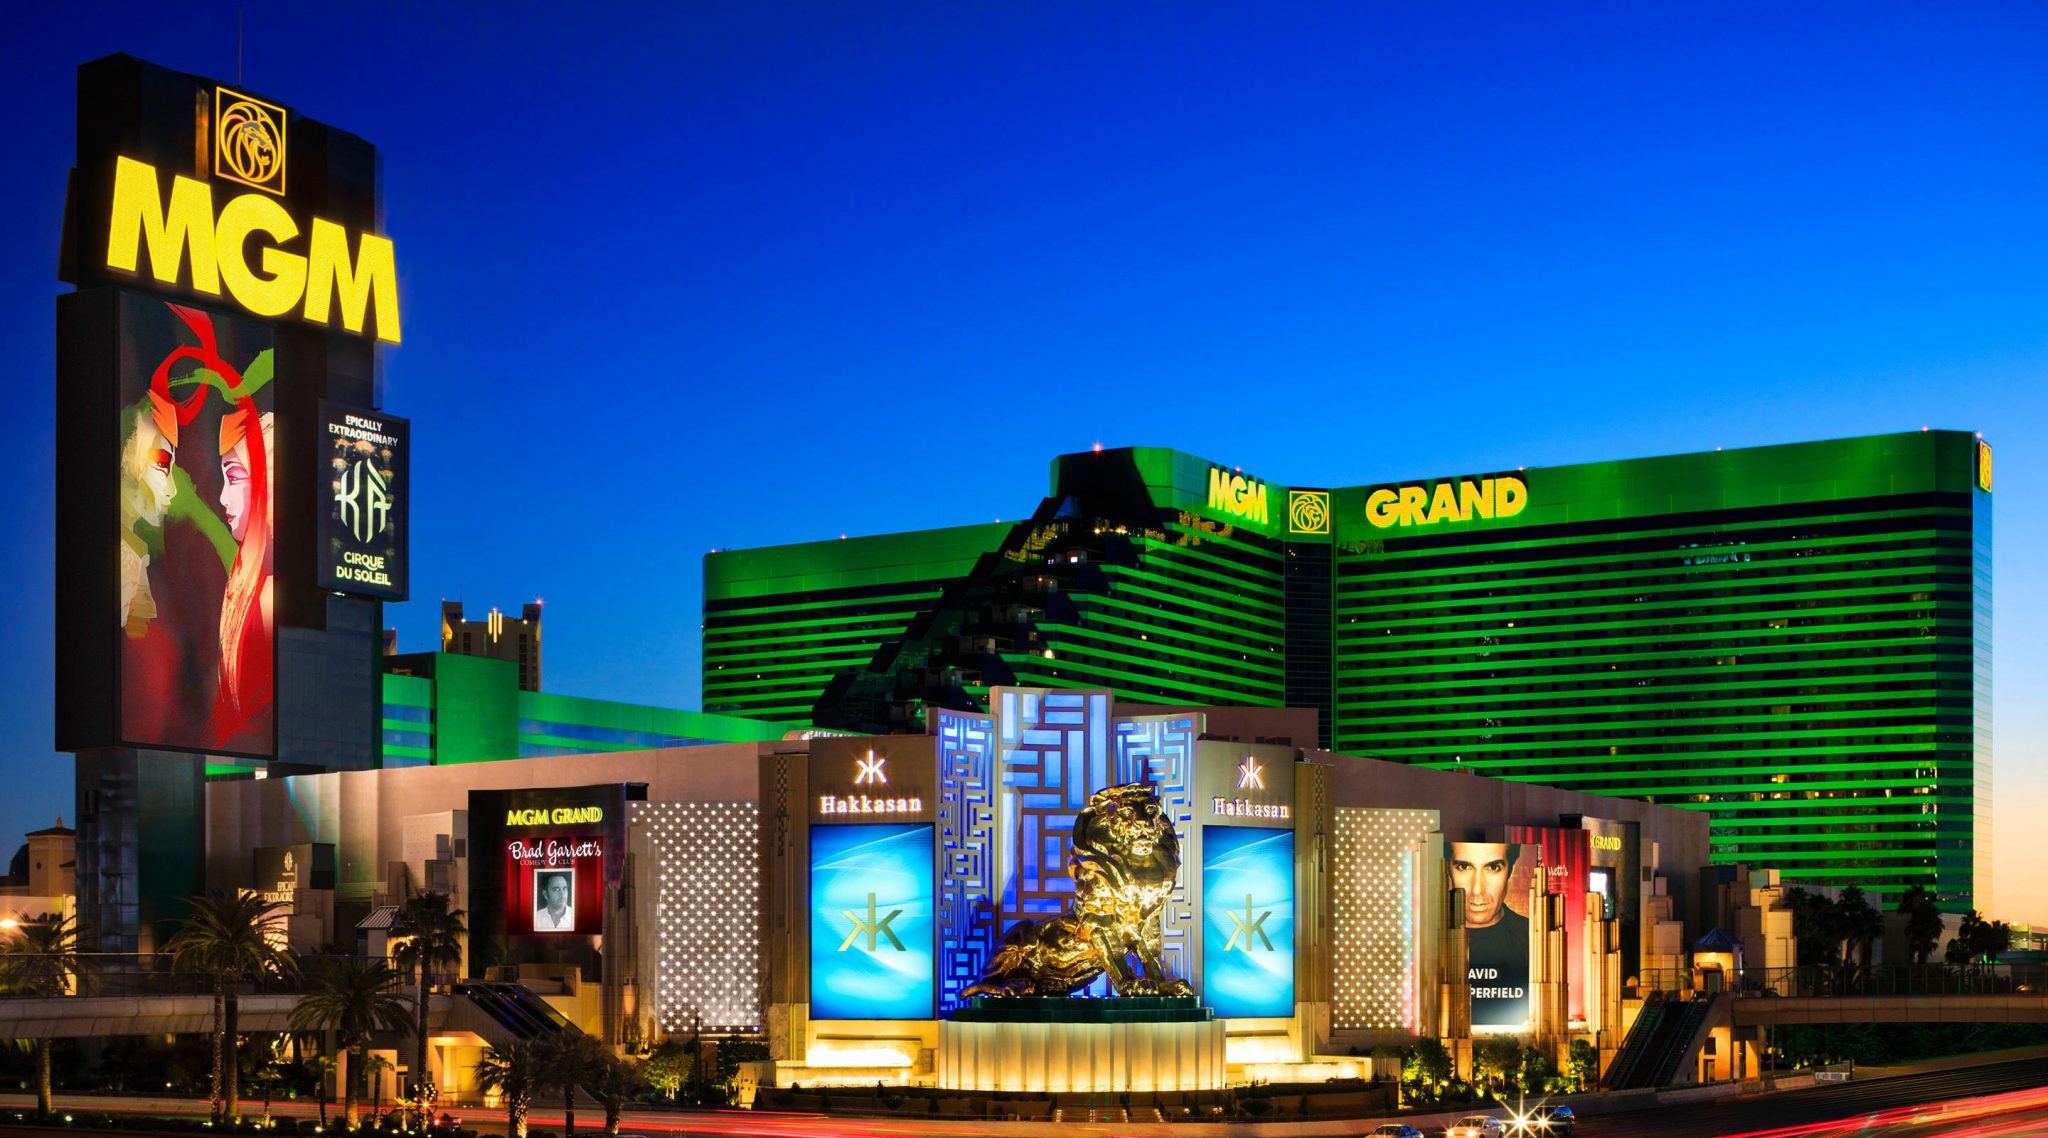 aria resort and casino mgm properties vegas